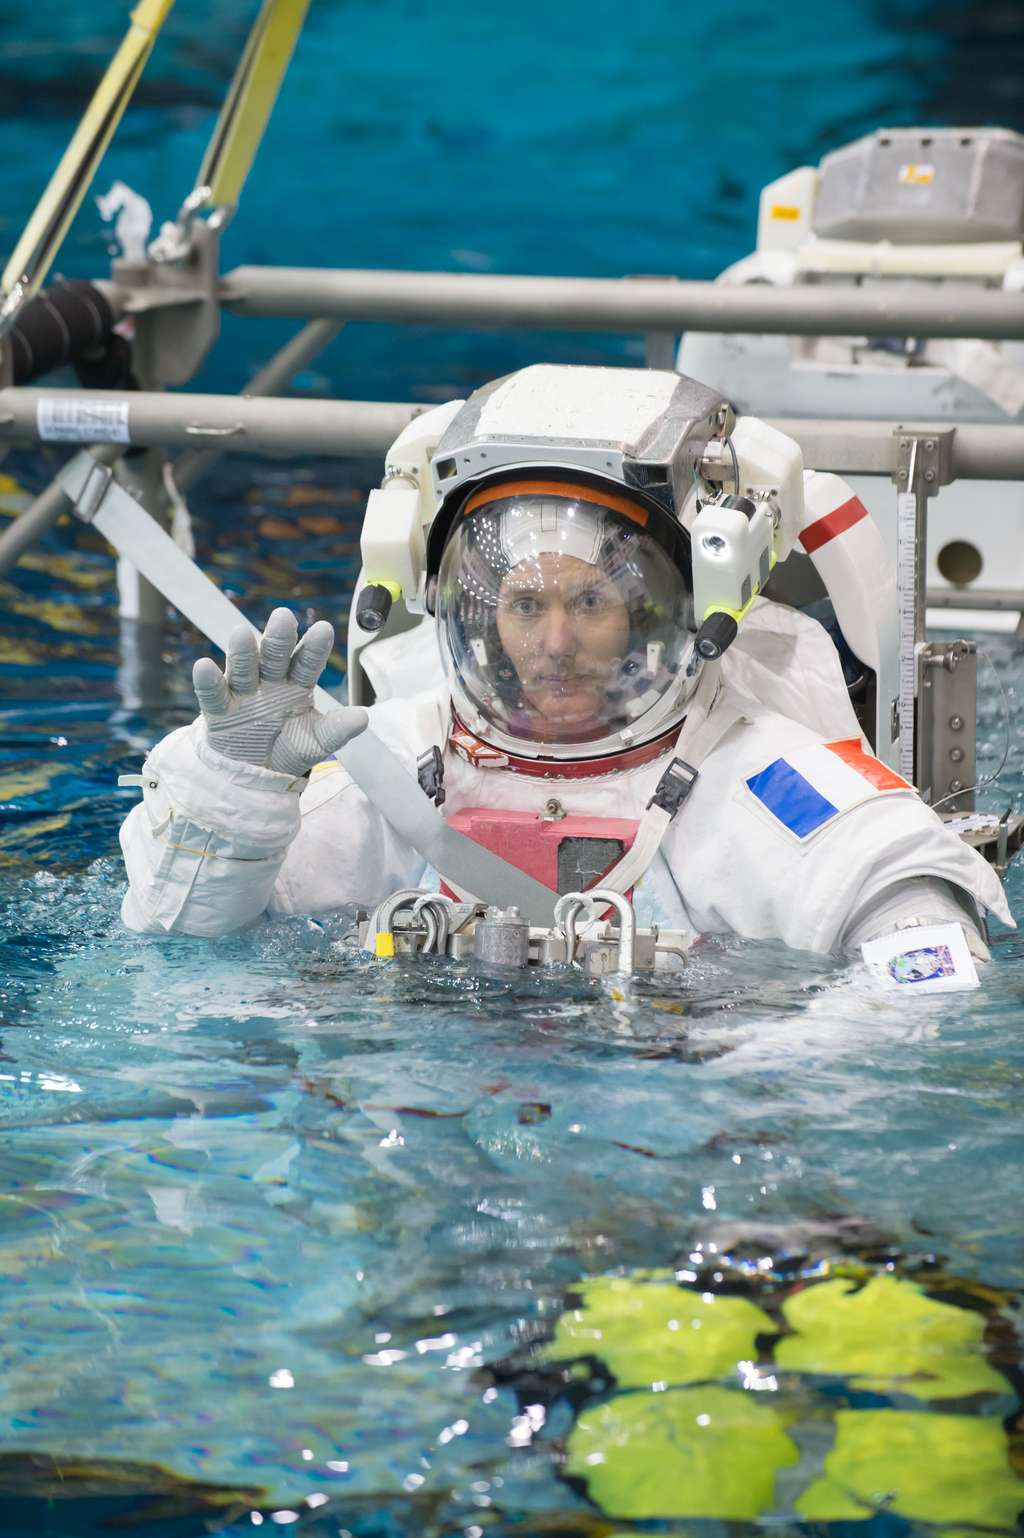 Thomas Pesquet à l'entraînement. La piscine est un passage obligé pour les astronautes qui y retrouvent des conditions proches de l'espace et de l'absence de pesanteur lors d'une EVA (sortie extravéhiculaire). Mais décider si, là-haut, ils sortiront ou non dans l'espace n'est pas de leur ressort. Même si une EVA n'est pas prévue durant leur séjour dans l'ISS, ils doivent s'y préparer pour être capable d'effectuer une réparation à l'extérieur. © Upside Télévision